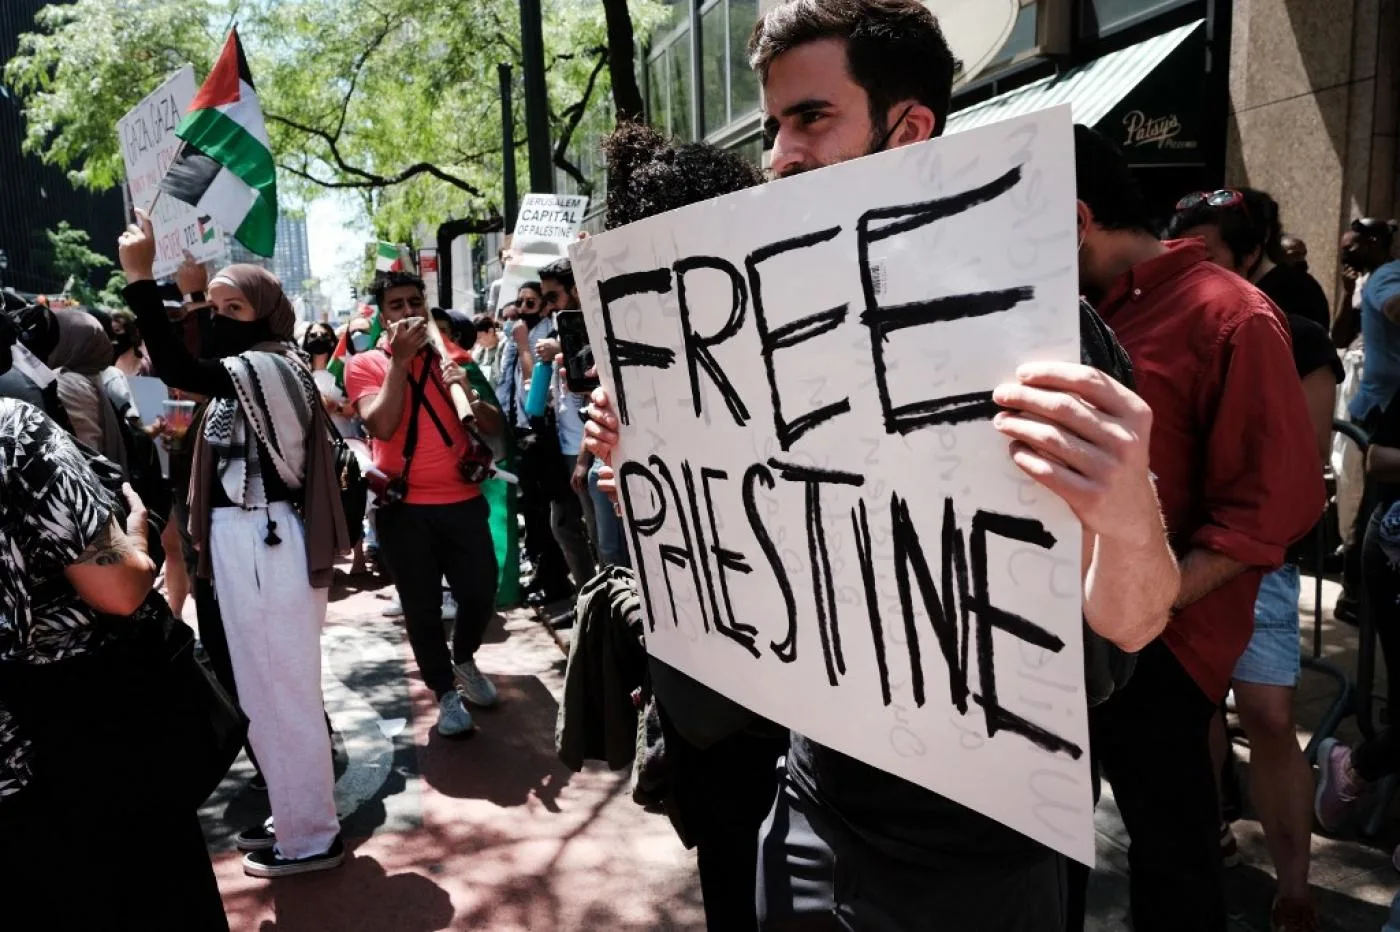 متظاهرون يحتشدون دعما للقضية الفلسطينية في مدينة نيويورك يوم 18 أيار/ مايو 2021.